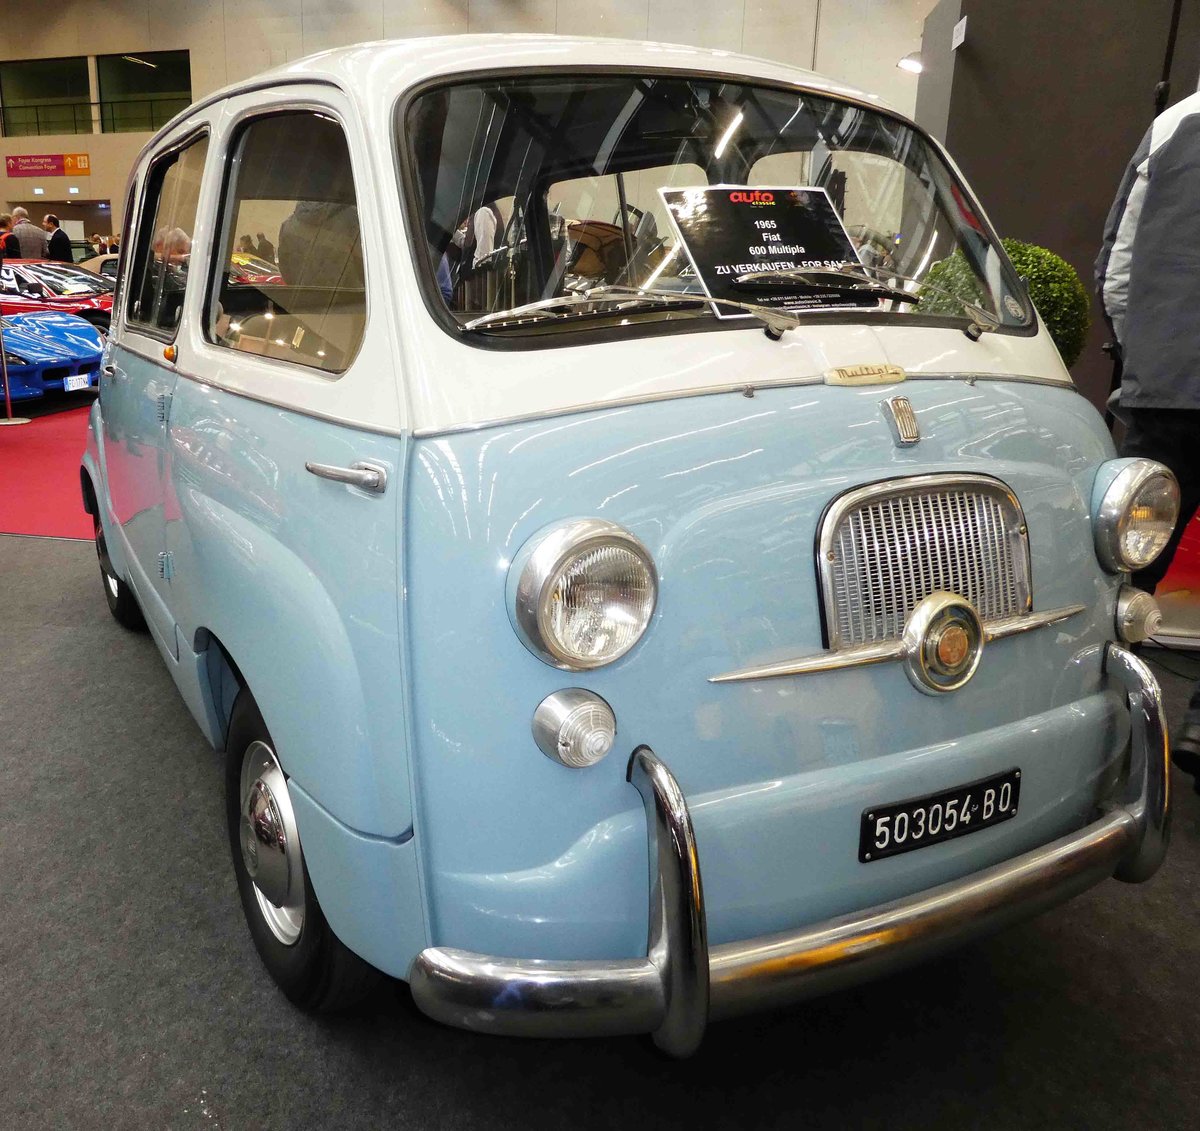 =Fiat 600 Mulitpla,Bj. 1965, gesehen bei der Retro Classic in Stuttgart - März 2017